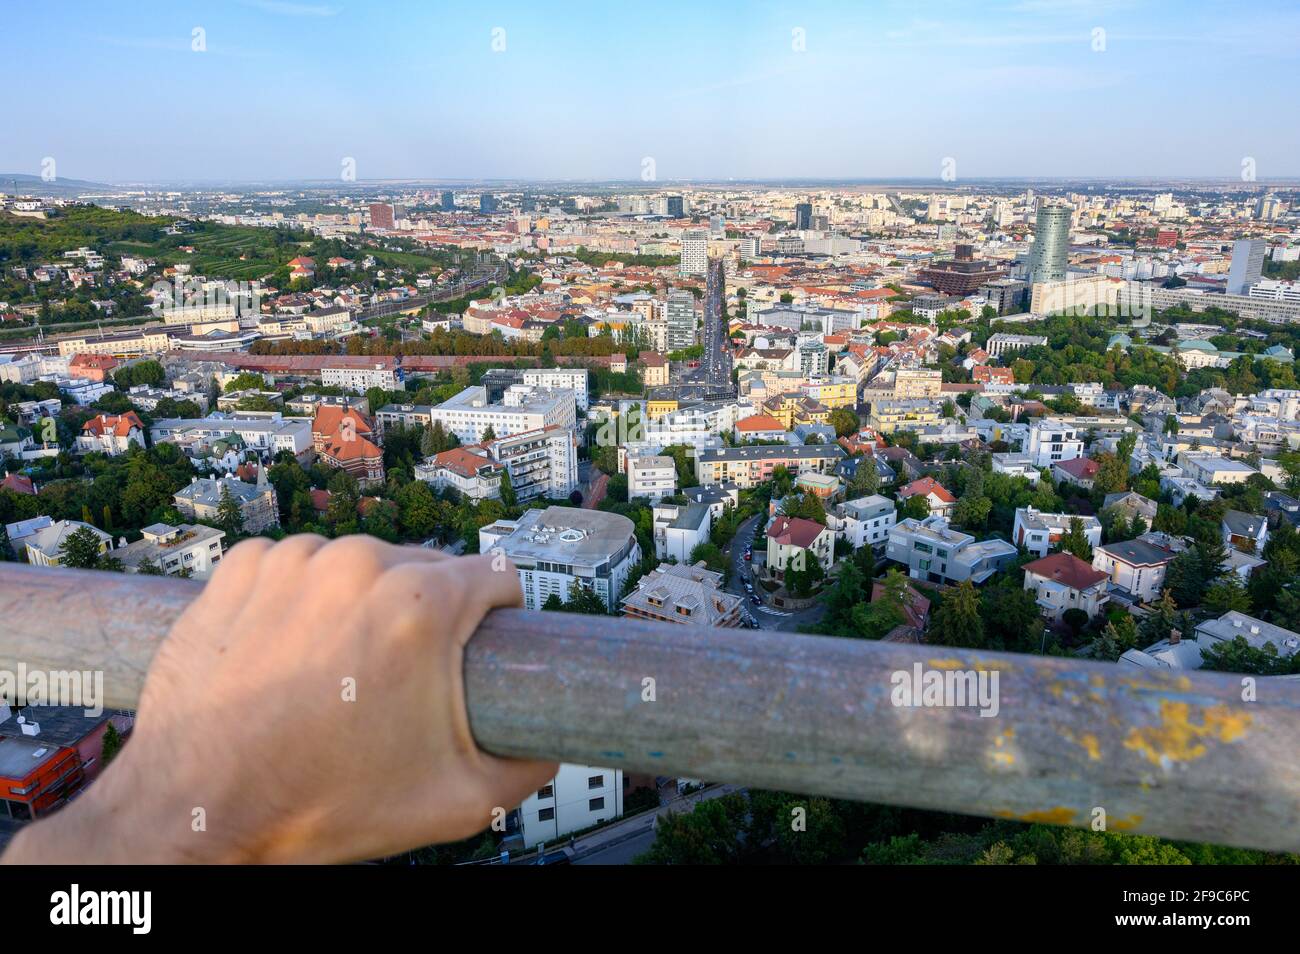 Il paesaggio urbano di Bratislava (Slovacchia) visto dal monumento Slavín. Foto Stock